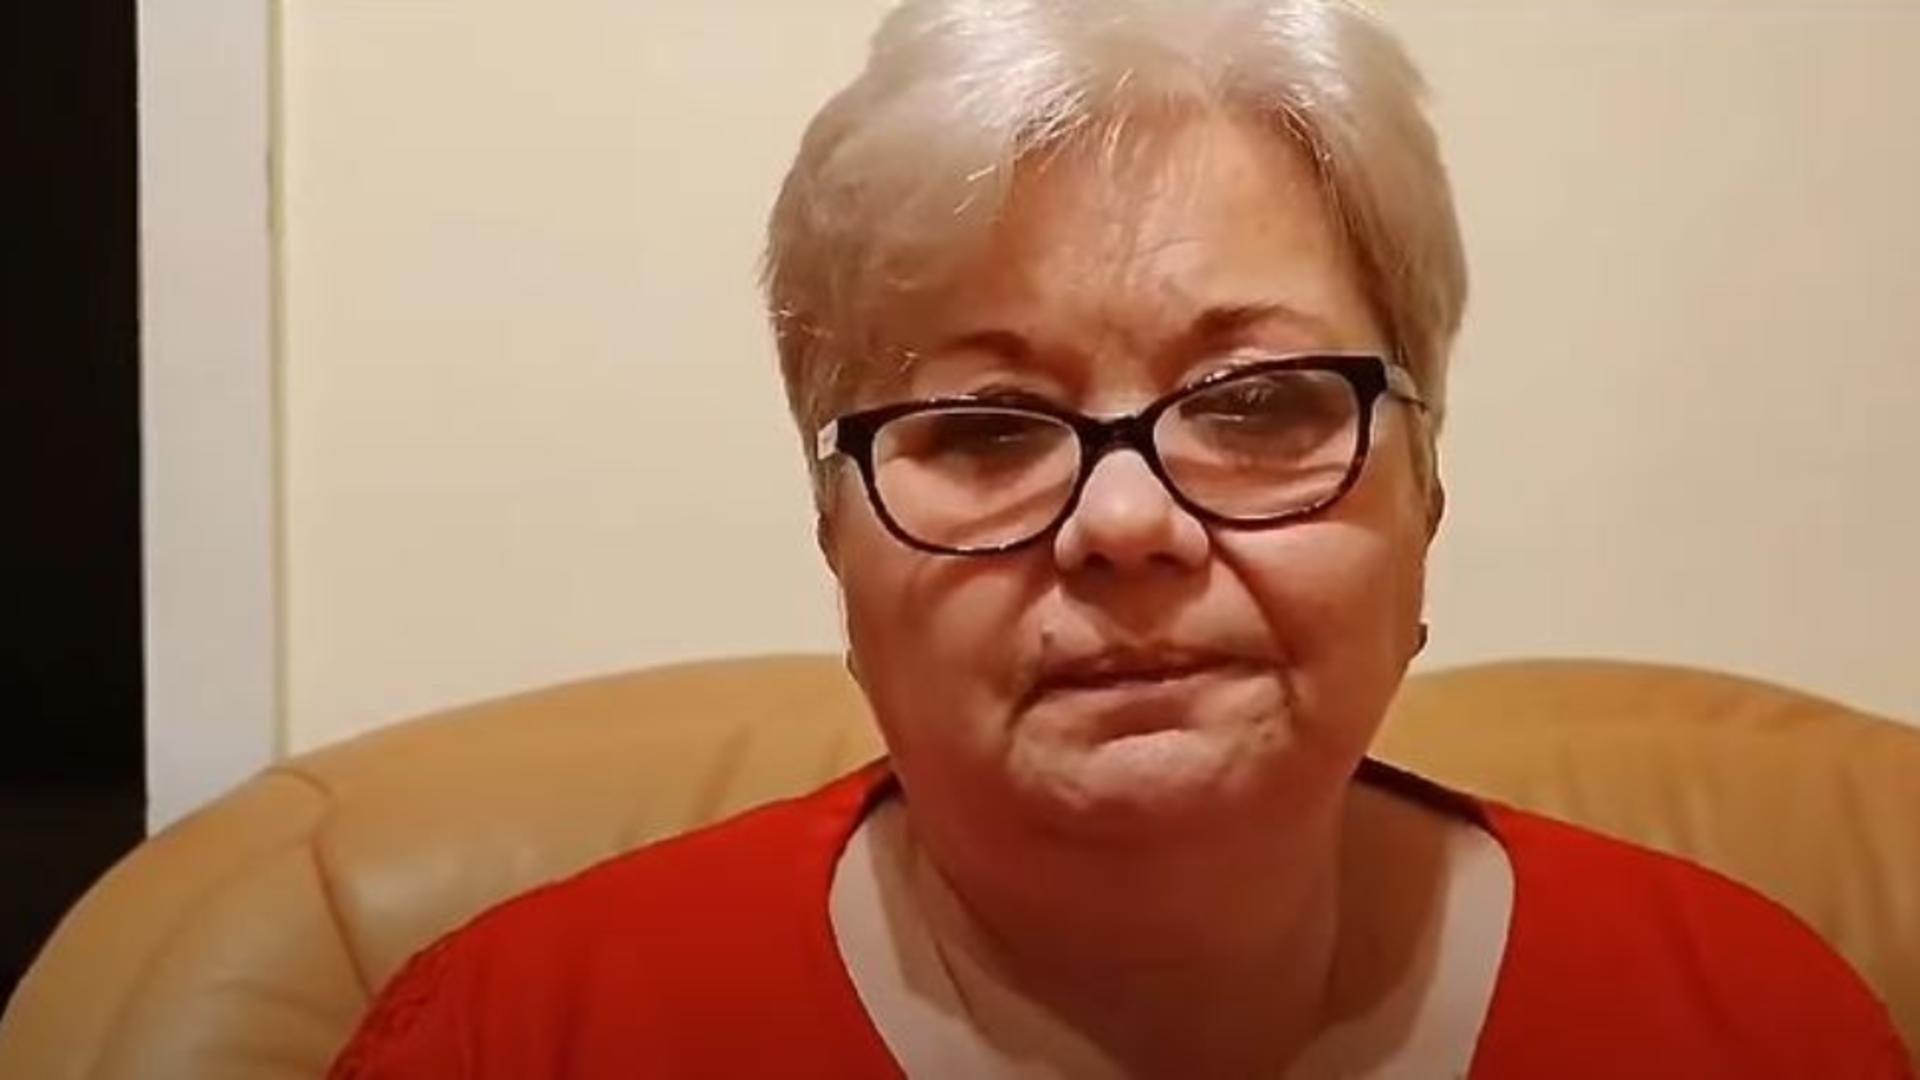 Mesajul emoționant al mamei minorei care a fost sechestrată în Sighetu Marmației: “Aveți grijă de copiii dumneavoastră”